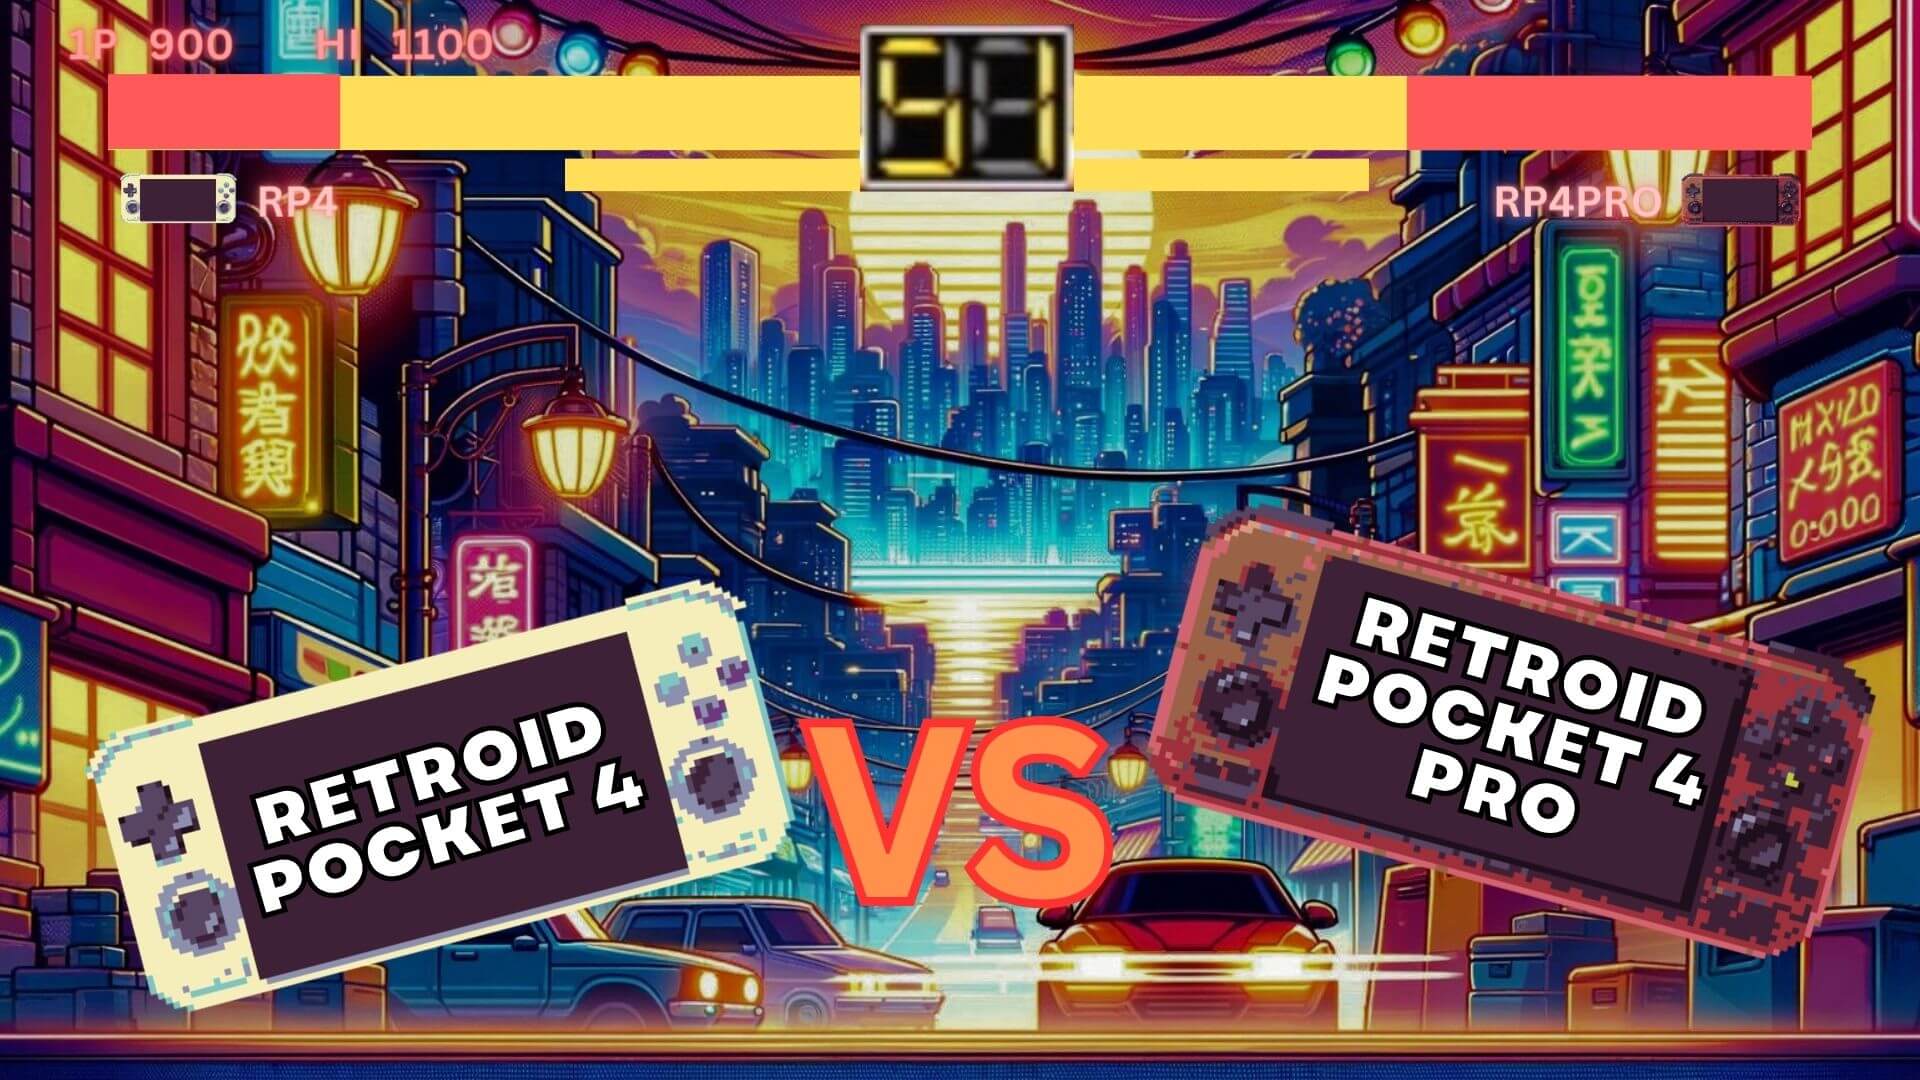 Retroid Pocket 4 vs Retroid Pocket  4 PRO med video - Hvilken har best pris kontra ytelse?